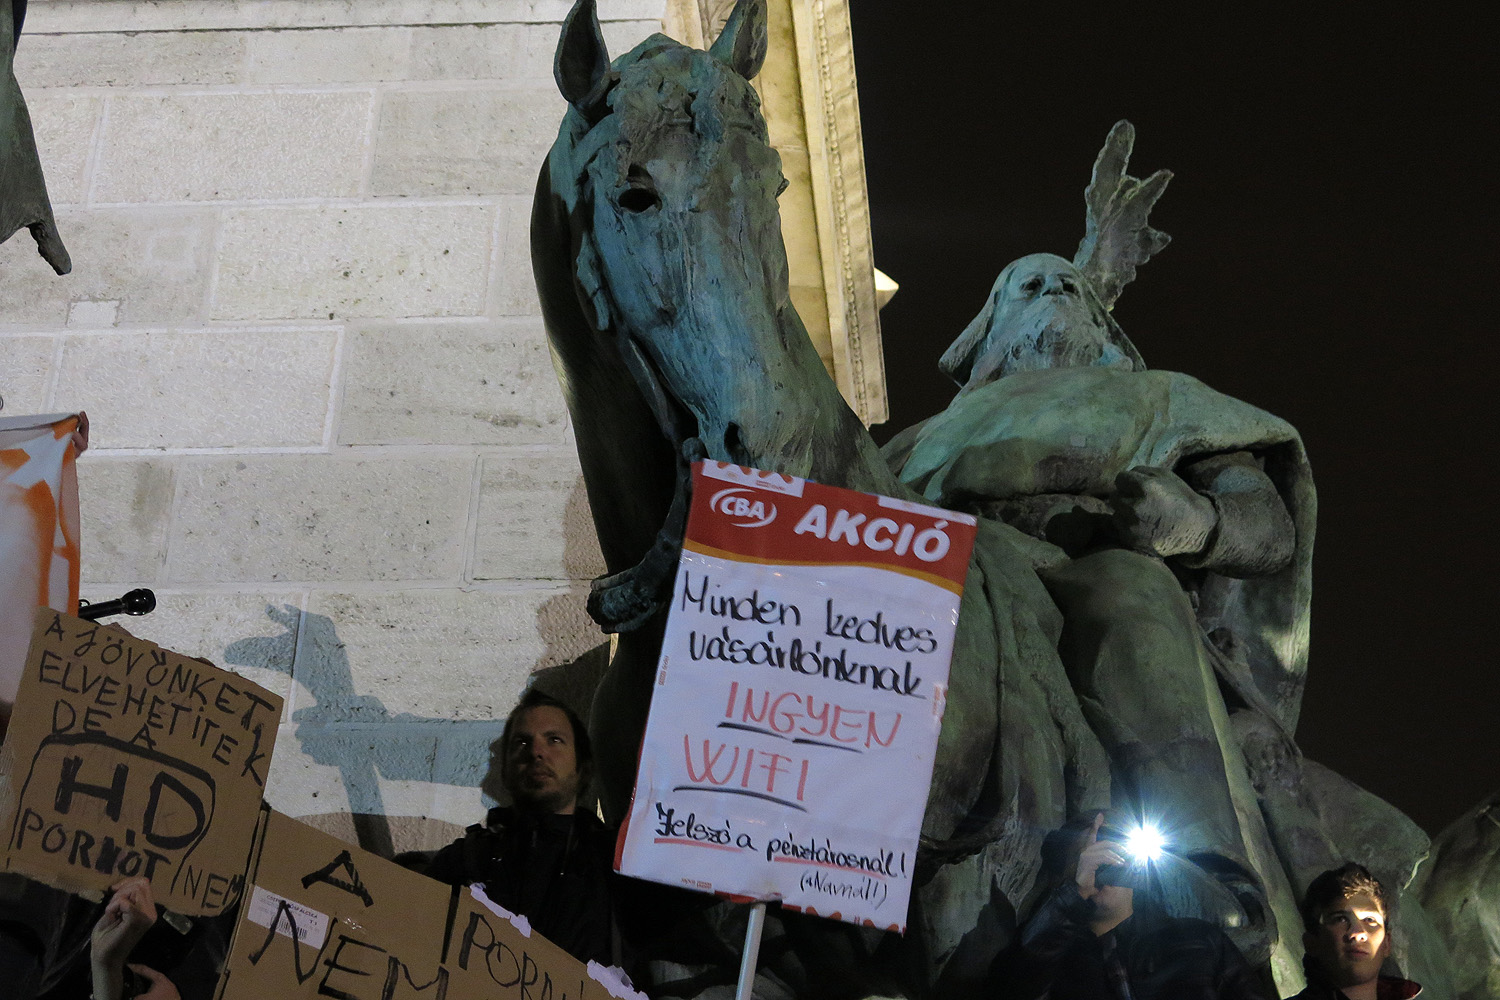 Húngaros protestam contra nova cobrança de internet proposta pelo governo 